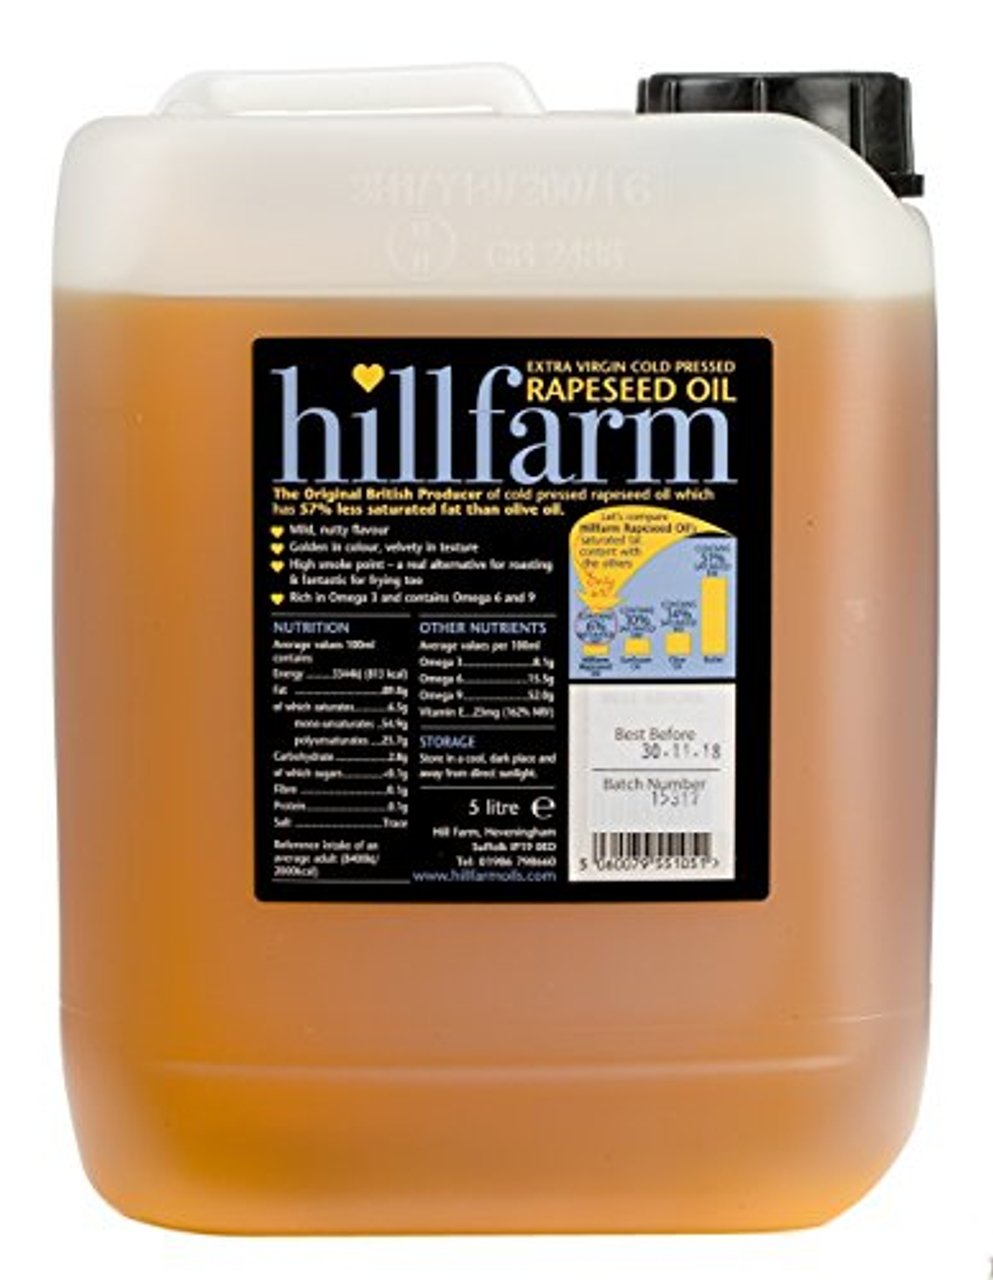 Hillfarm Rapeseed Oil Extra Virgin